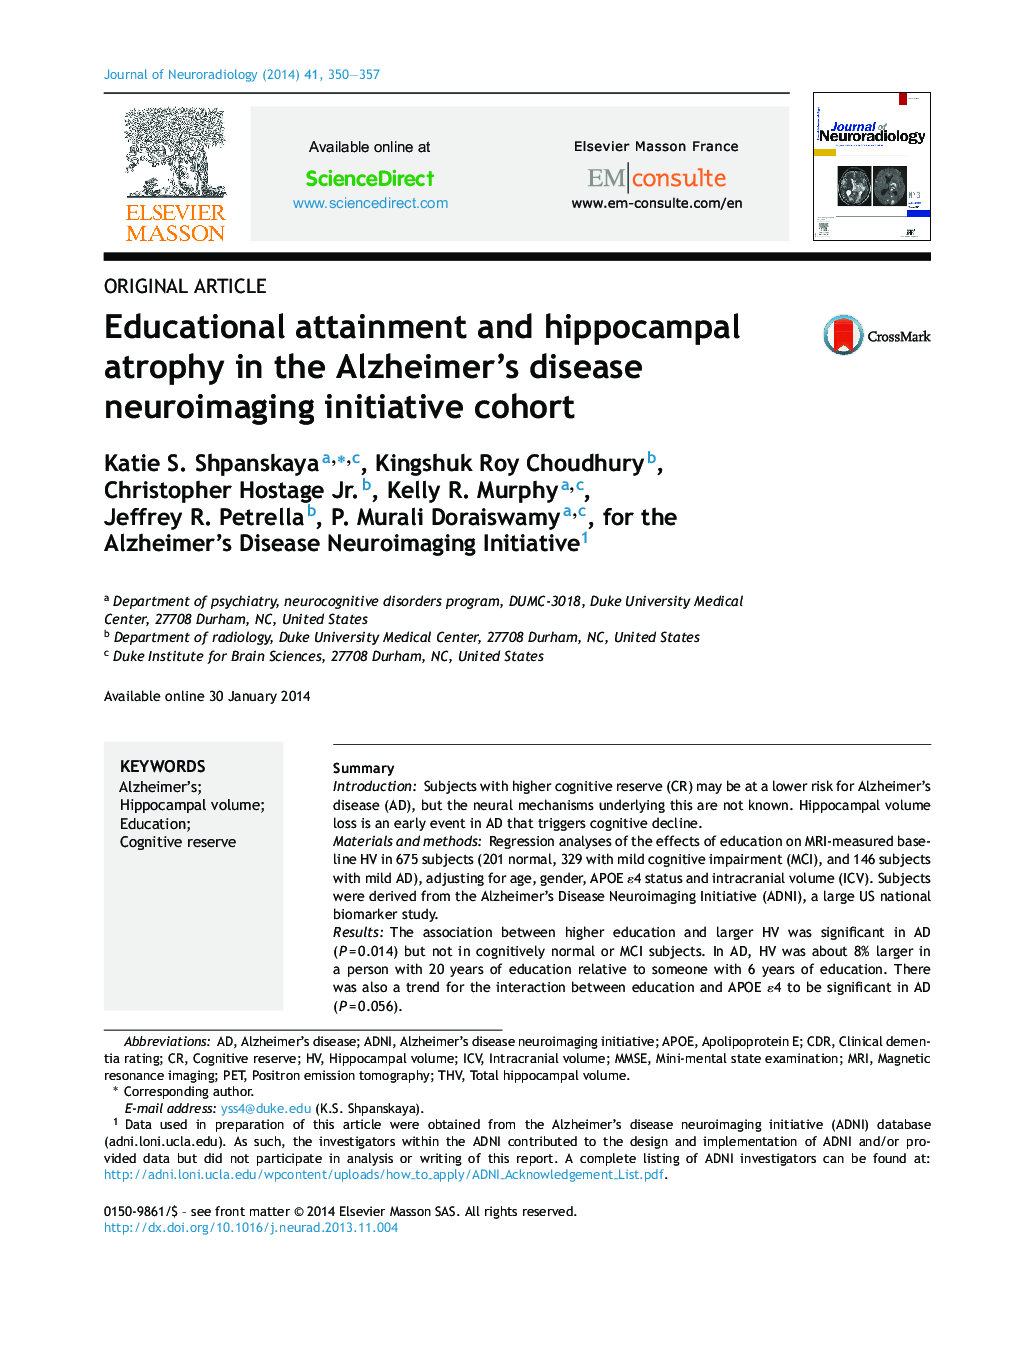 دستاوردهای آموزشی و آتروفی هیپوکامپ در گروه همگانی ابتلا به بیماری آلزایمر 